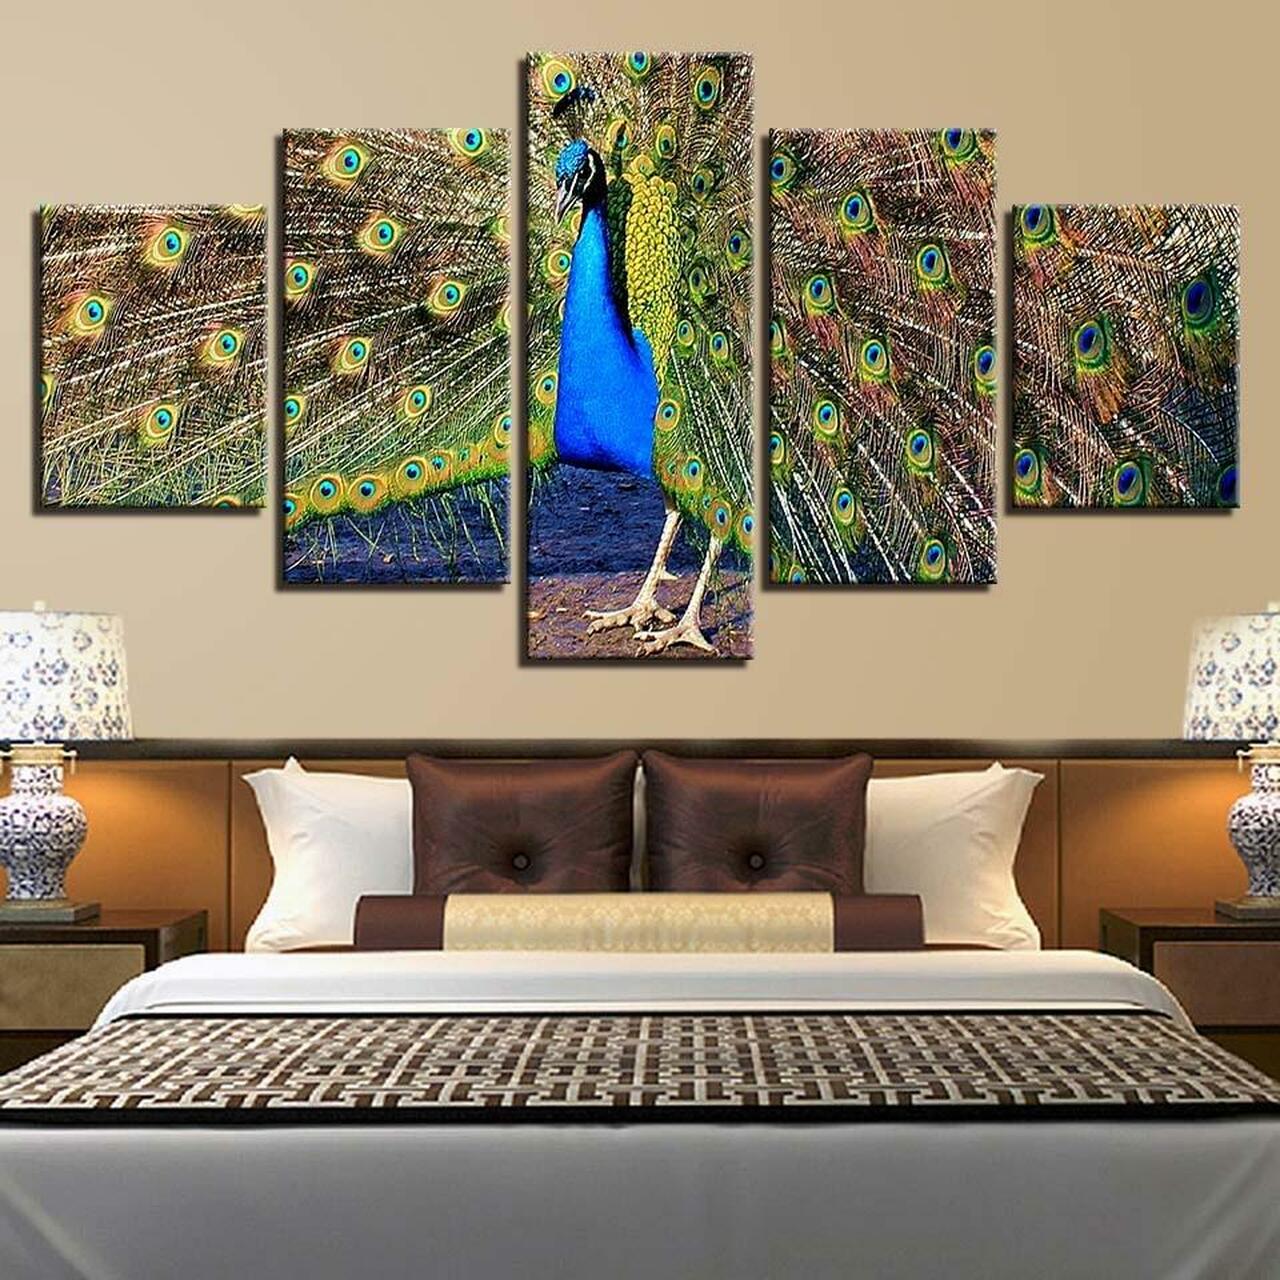 peacock spreads tail 5 pices peinture sur toile impression sur toile toile art pour la dcoration intrieurelszic